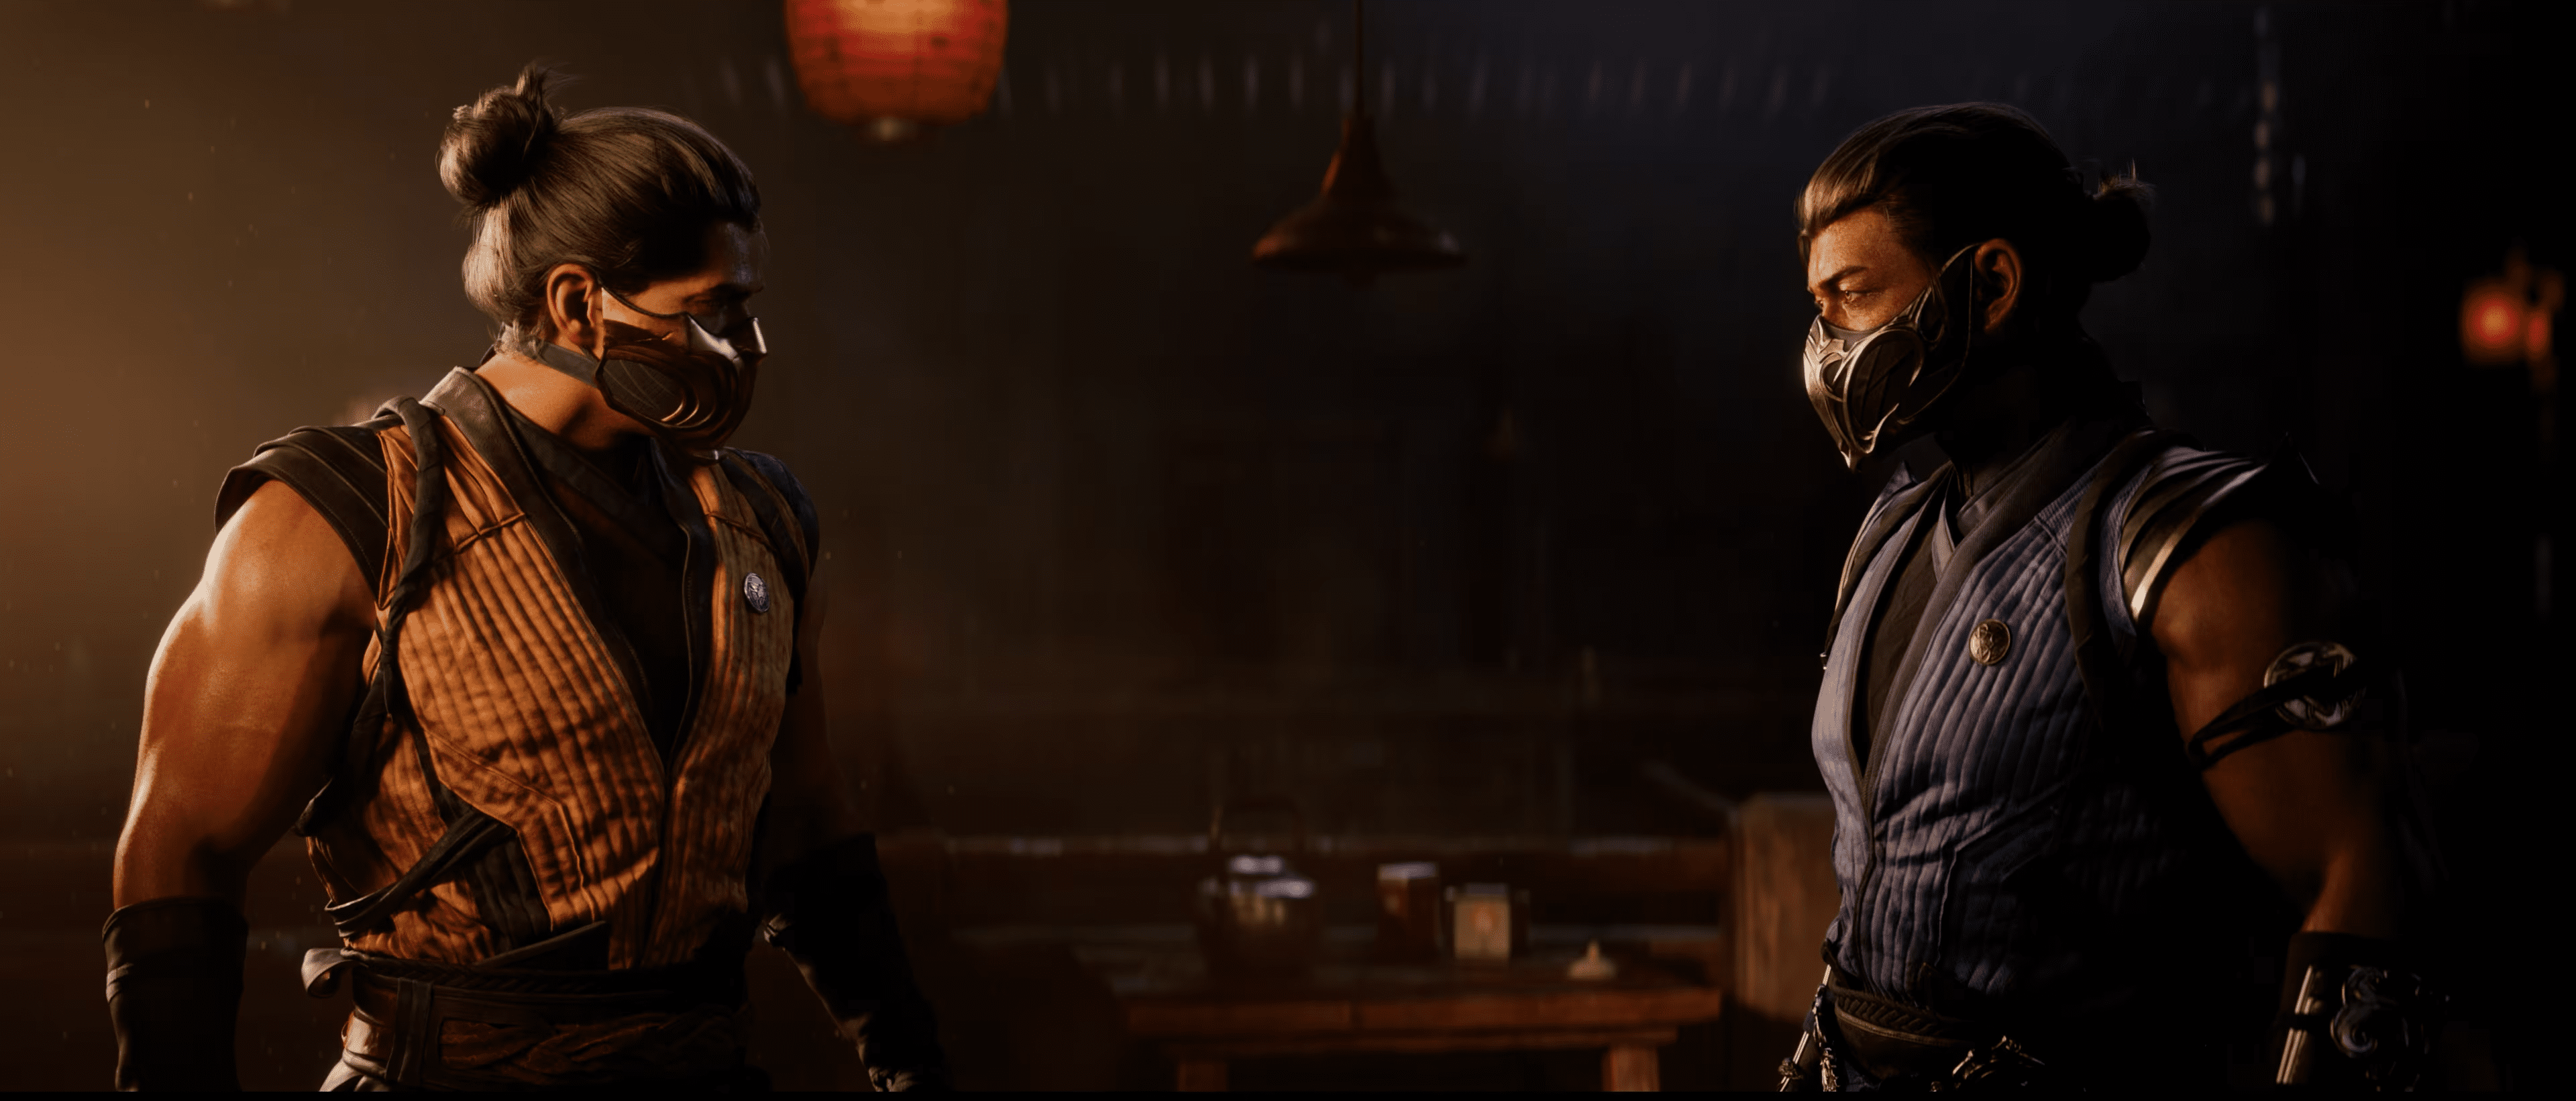 Mortal Kombat X] Novos personagens finalmente revelados